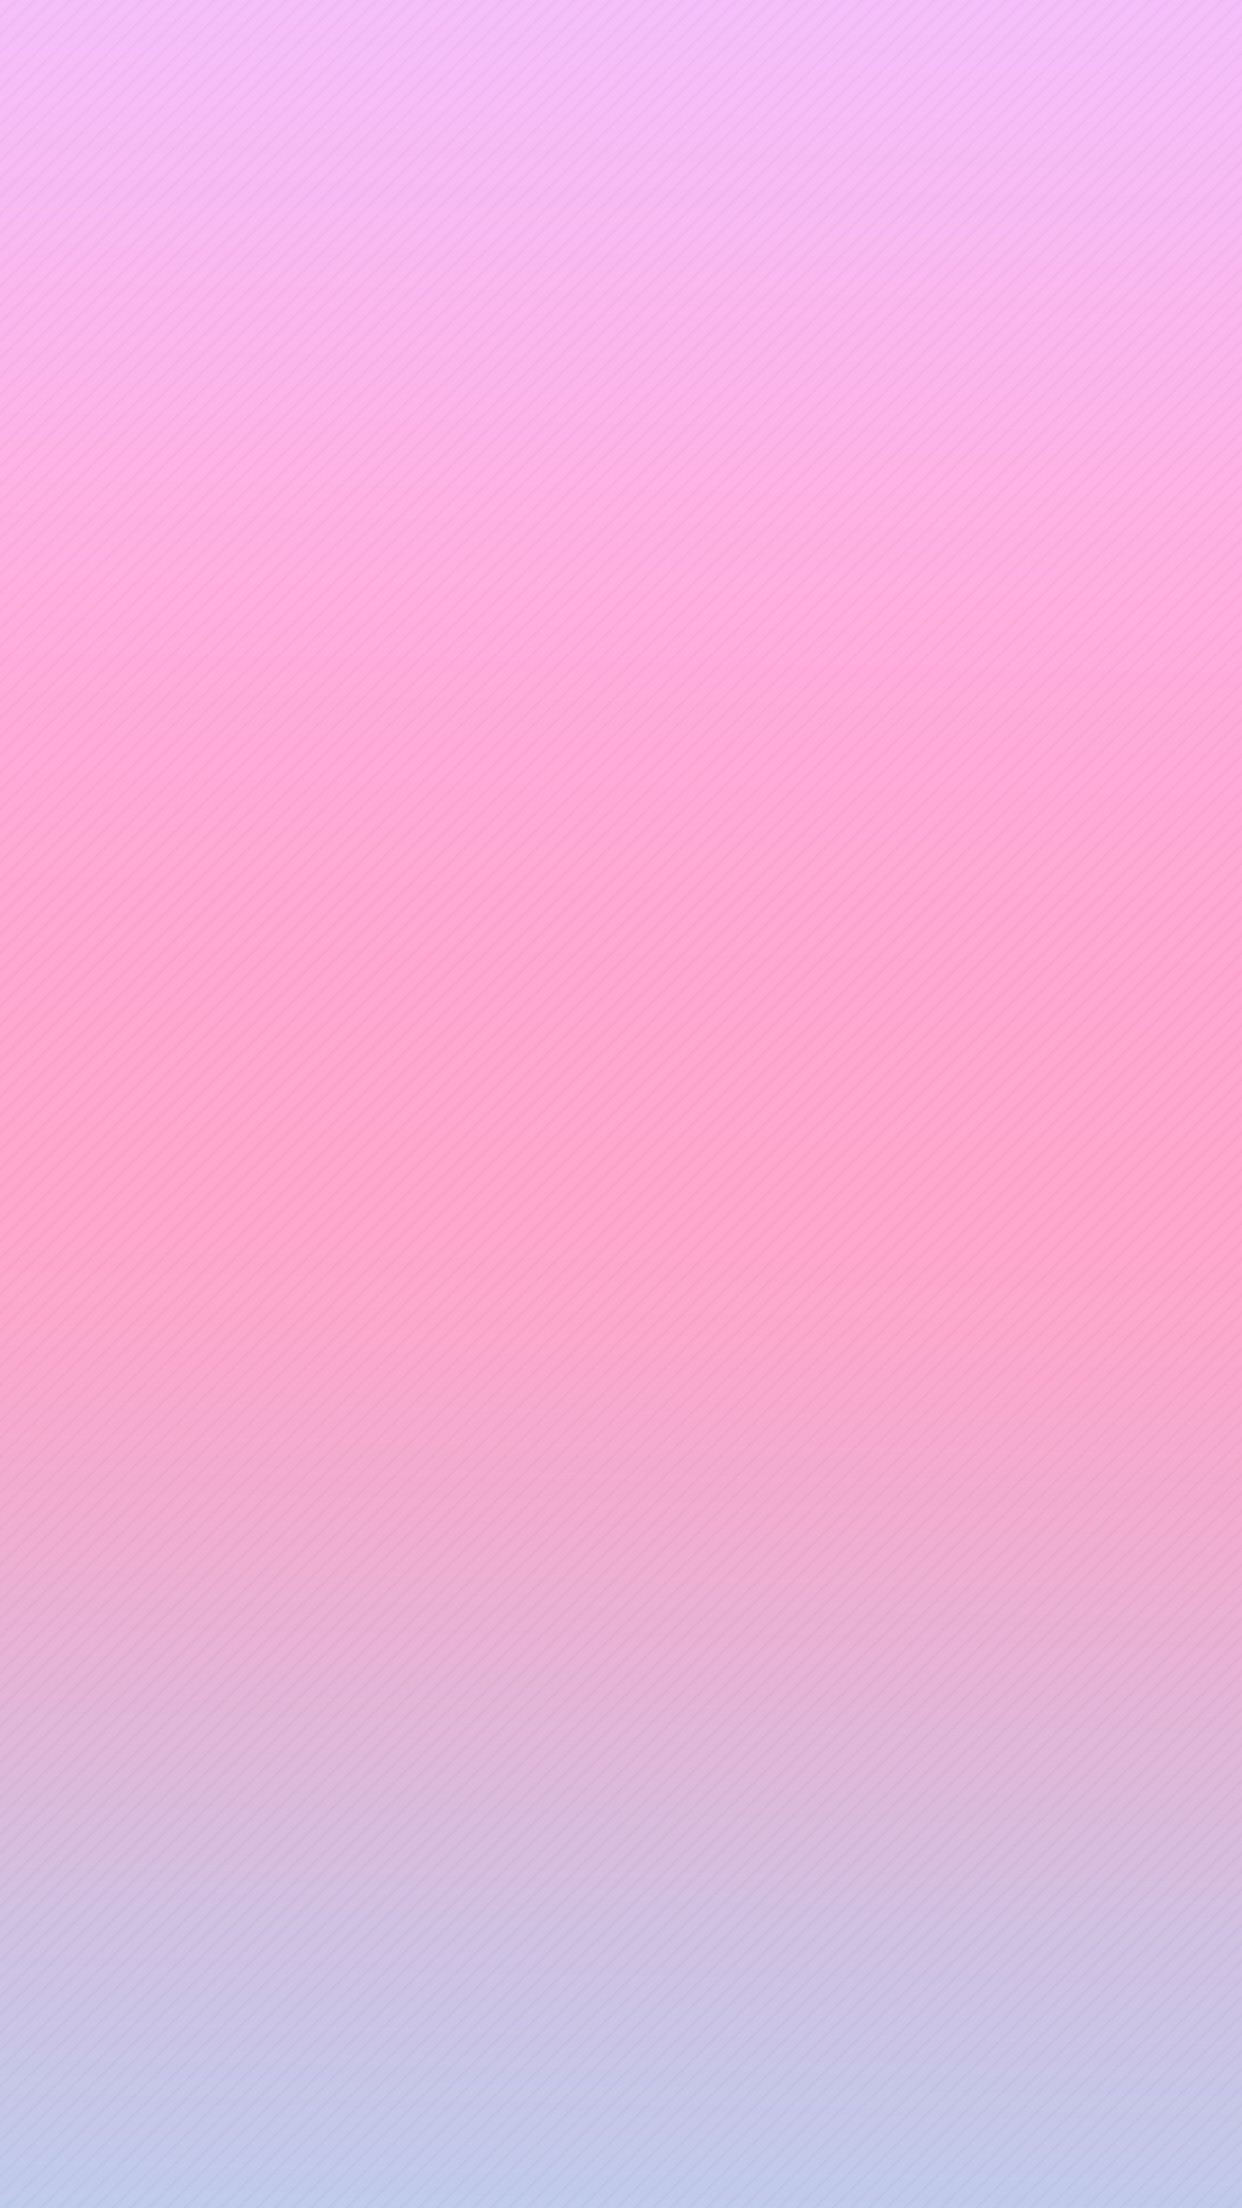 Free Pink Gradient Wallpaper, Pink Gradient Wallpaper Download